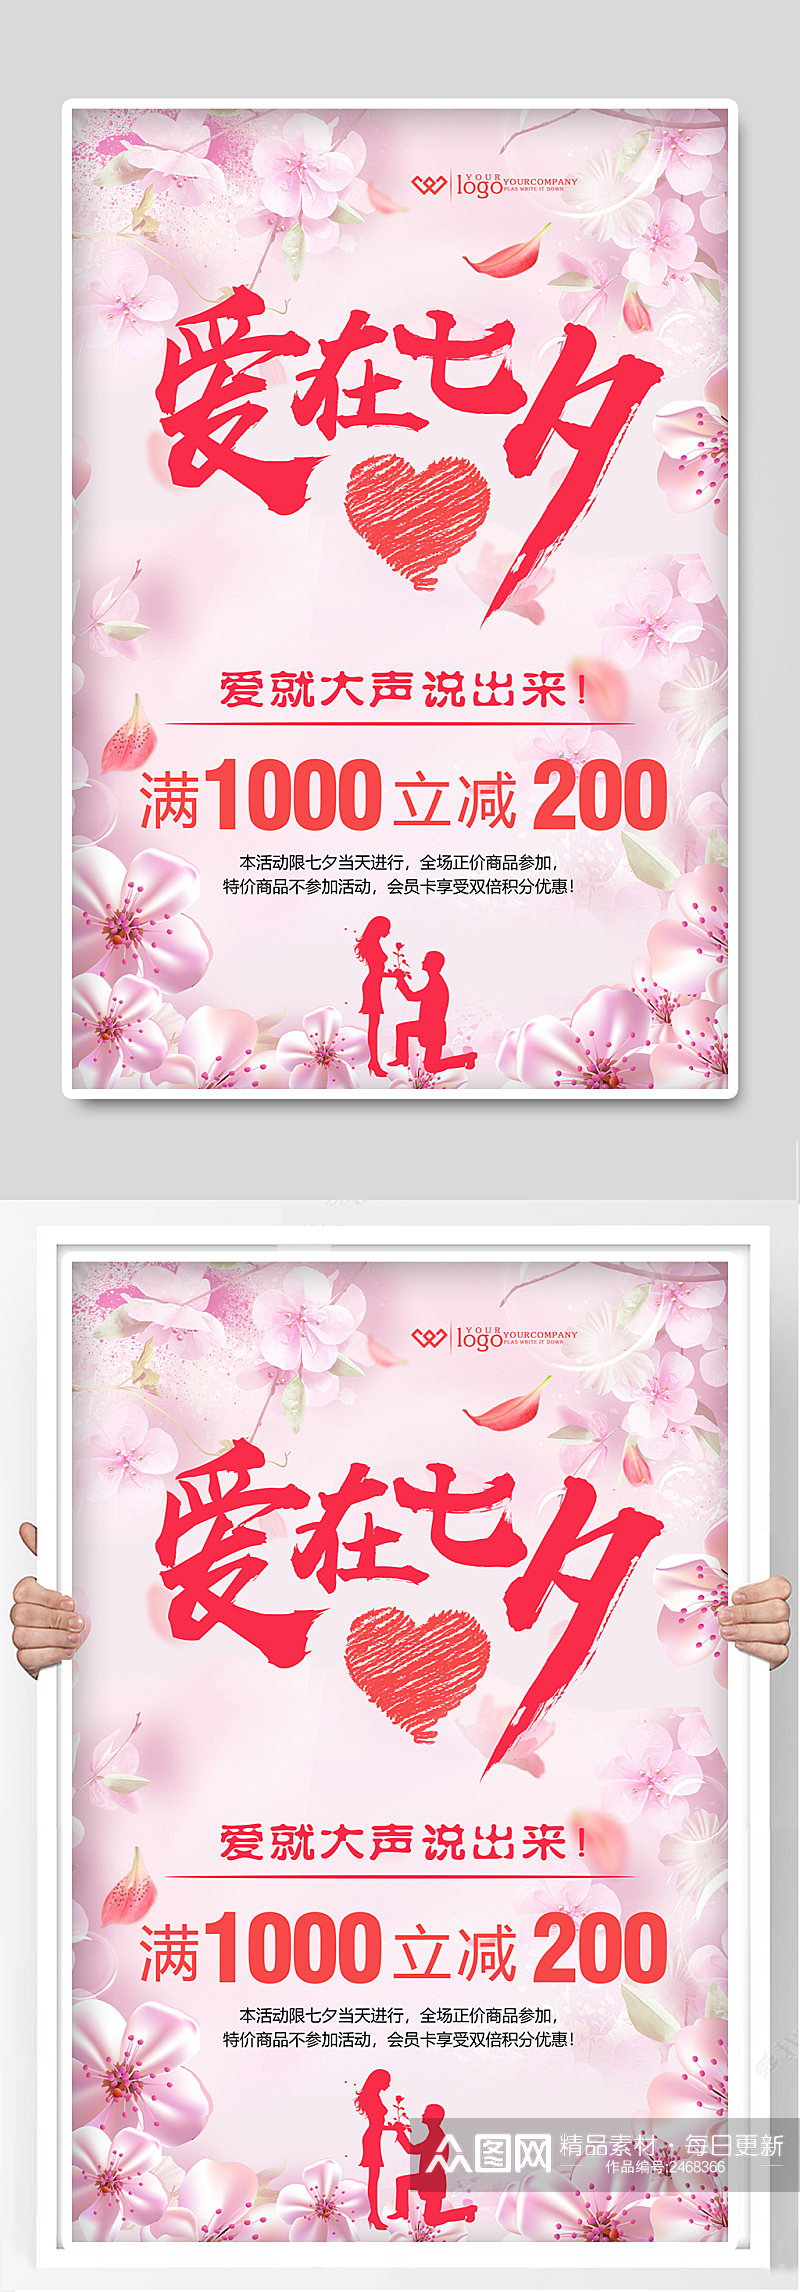 七夕情人节宣传海报展板素材